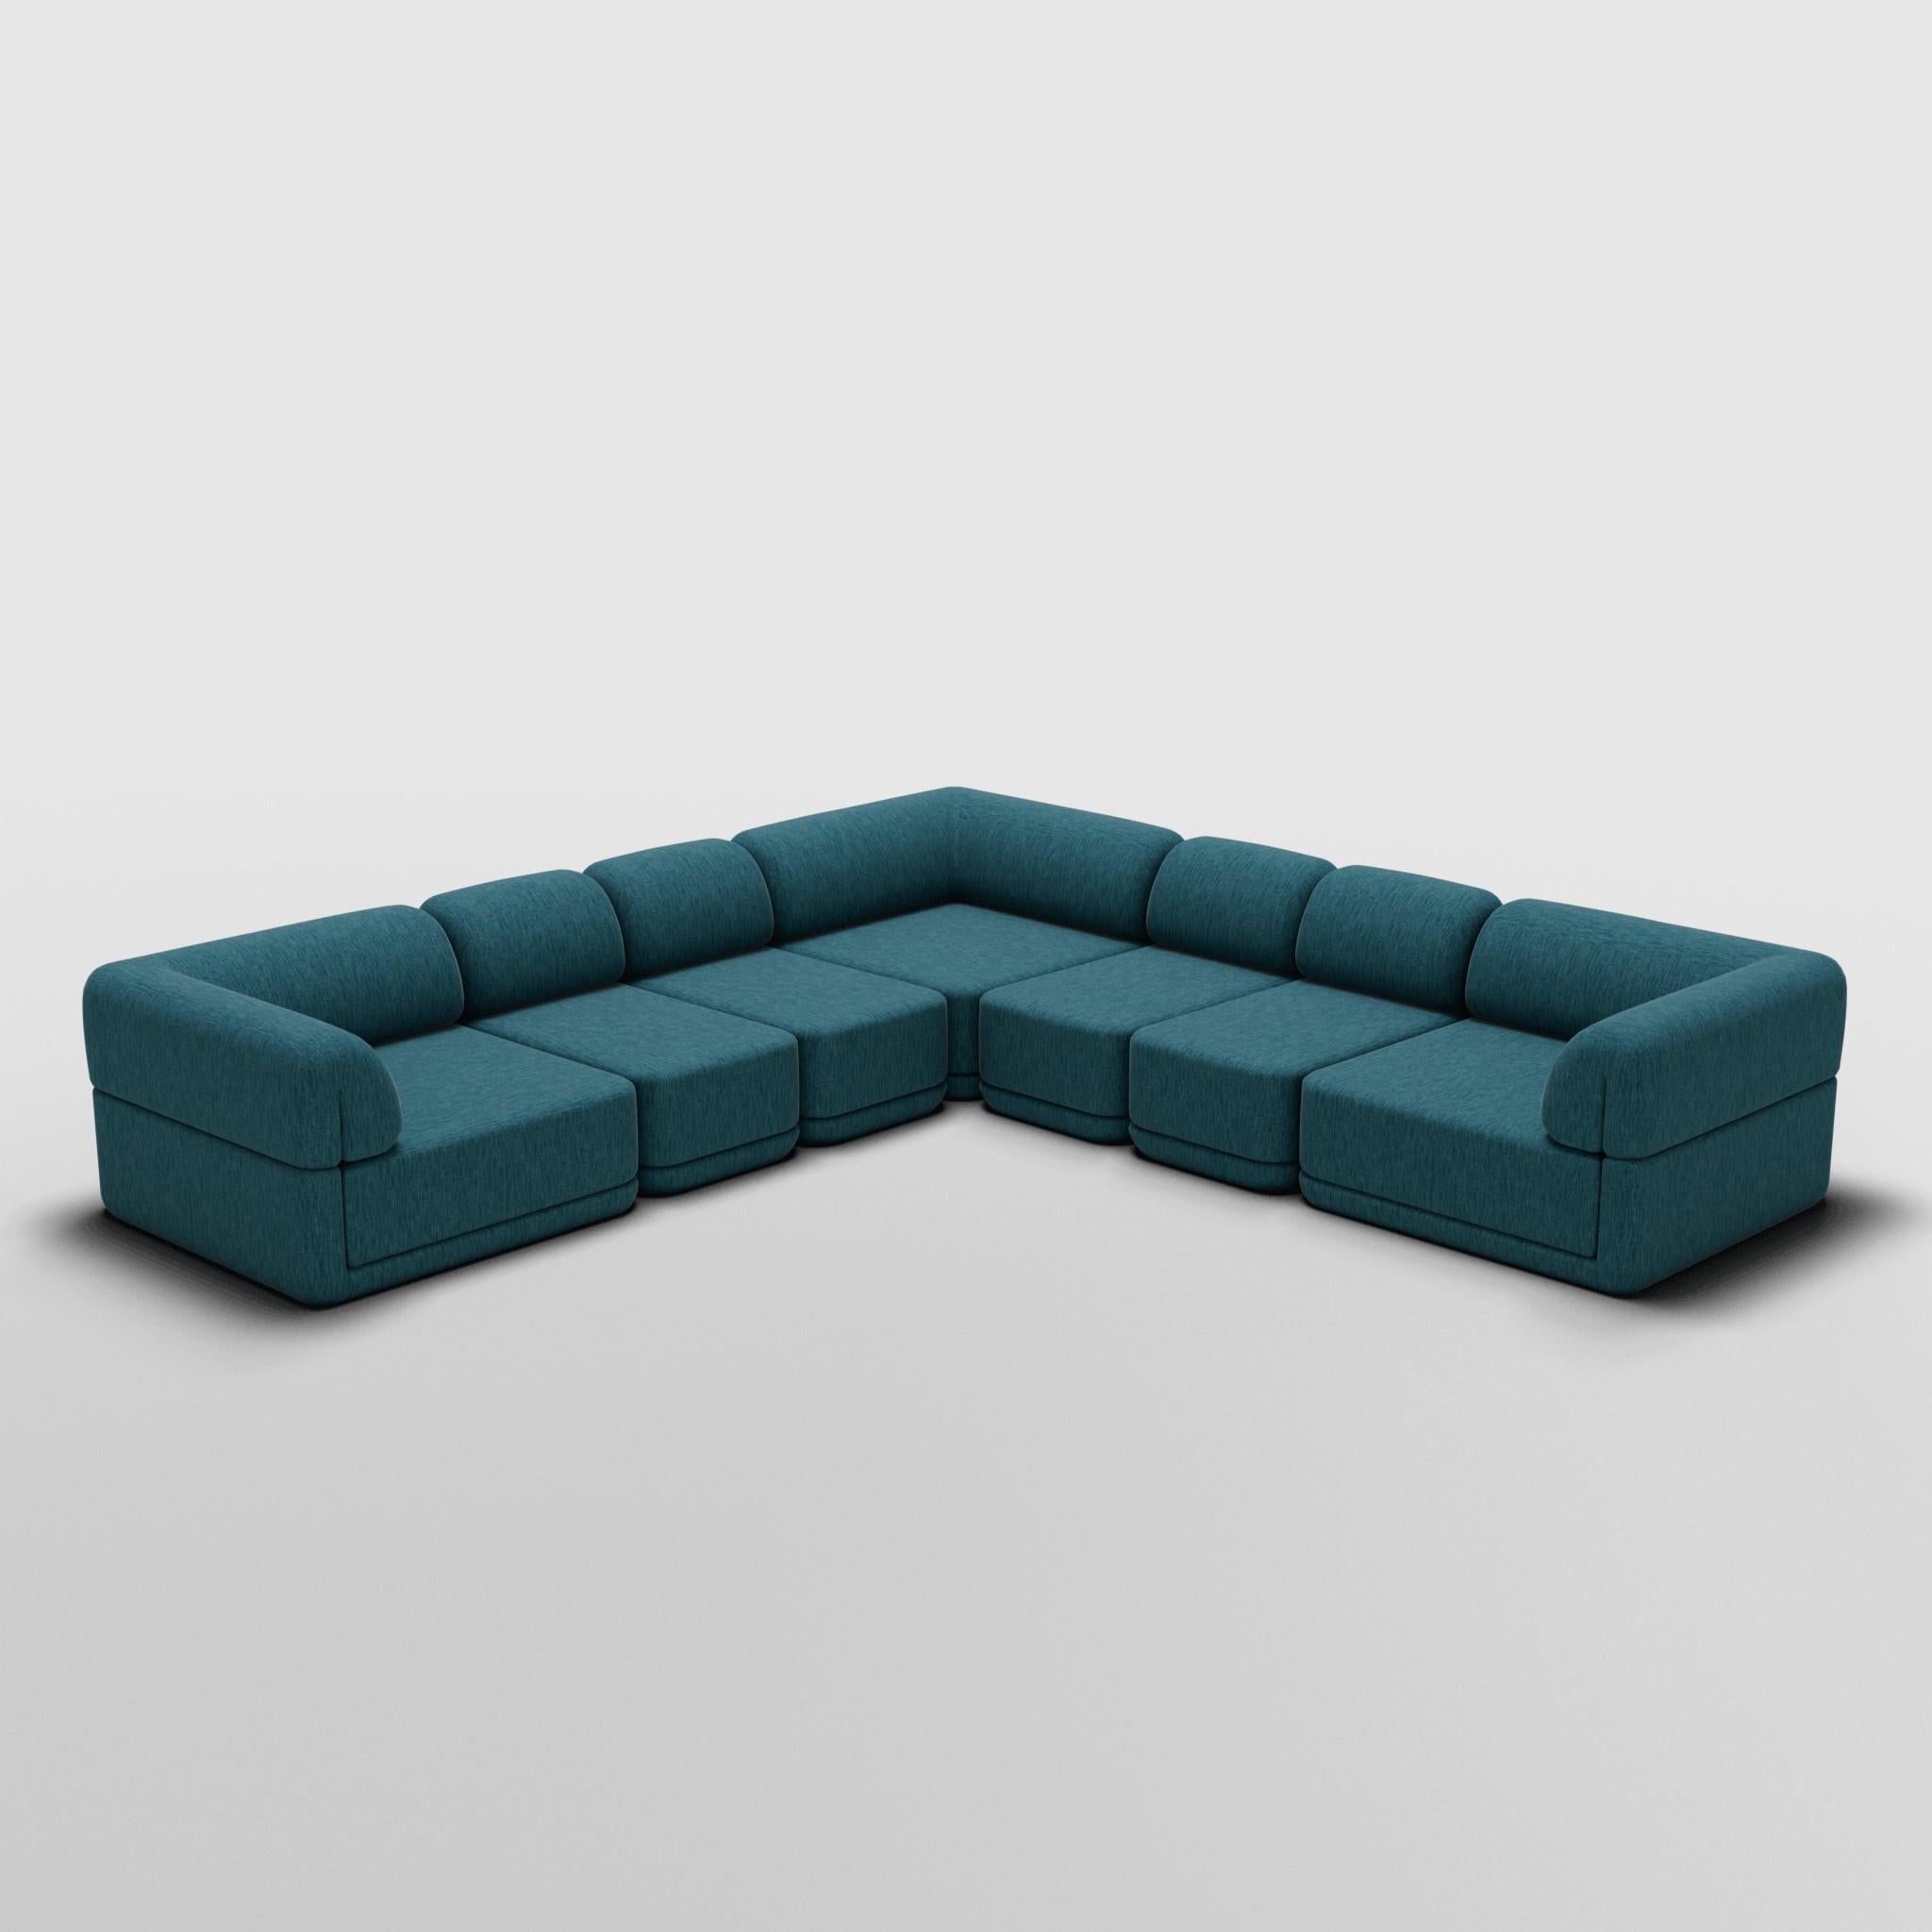 Sectionnel mince d'angle - Inspiré par les meubles de luxe italiens des années 70

Découvrez le canapé Cube, où l'art rencontre l'adaptabilité. Son design sculptural et son confort personnalisable créent des possibilités infinies pour votre espace